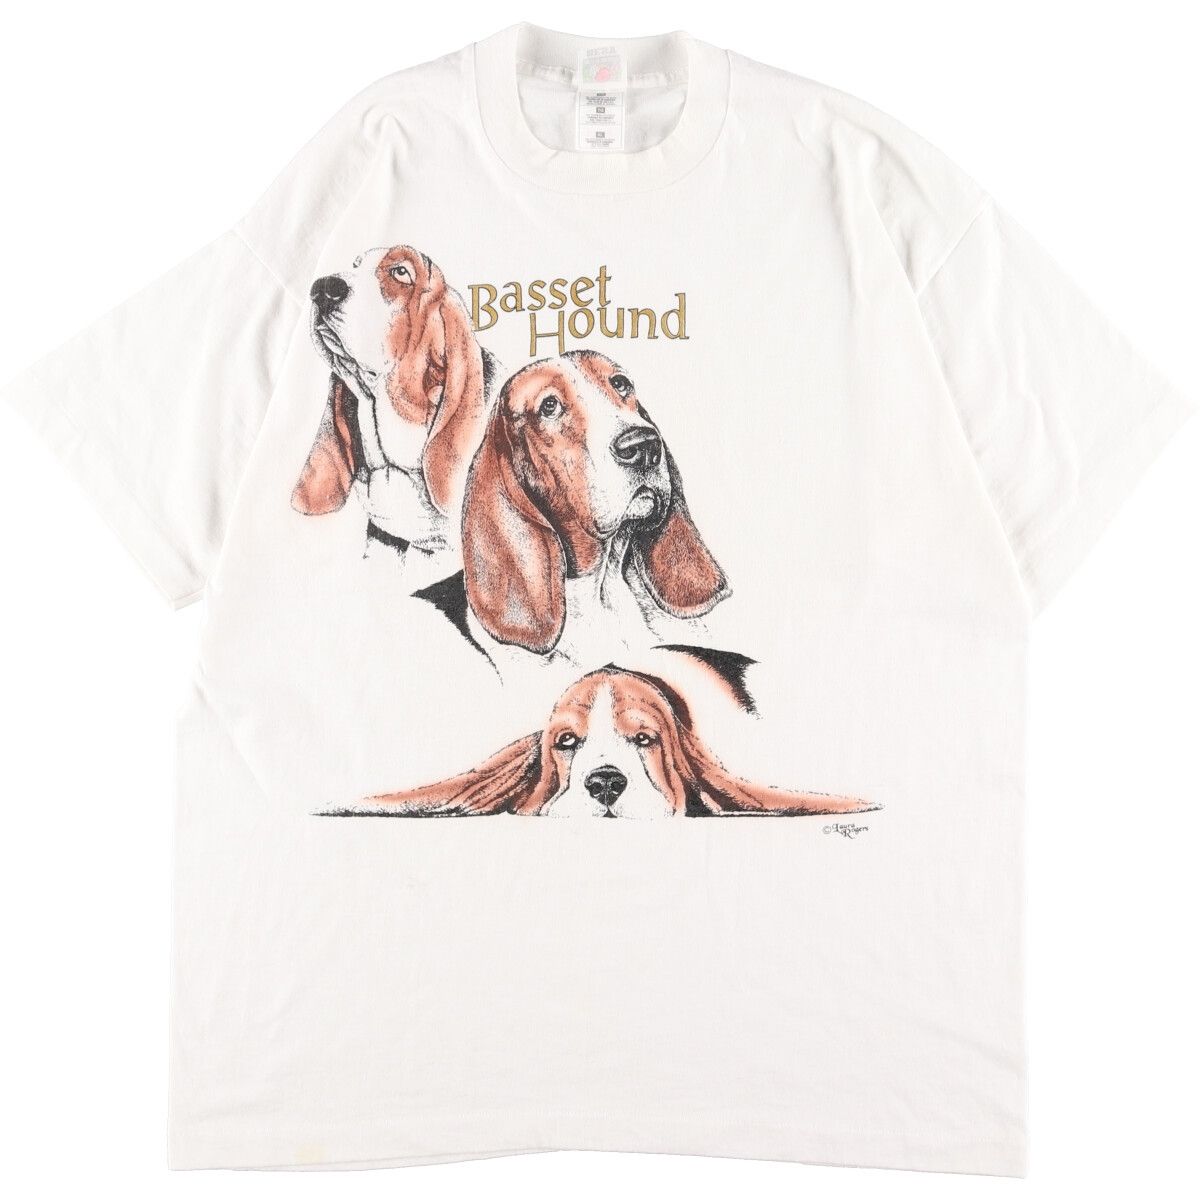 プリント生産国90年代 フルーツオブザルーム FRUIT OF THE LOOM 犬柄 アニマルプリントTシャツ USA製 メンズXL ヴィンテージ /eaa356192